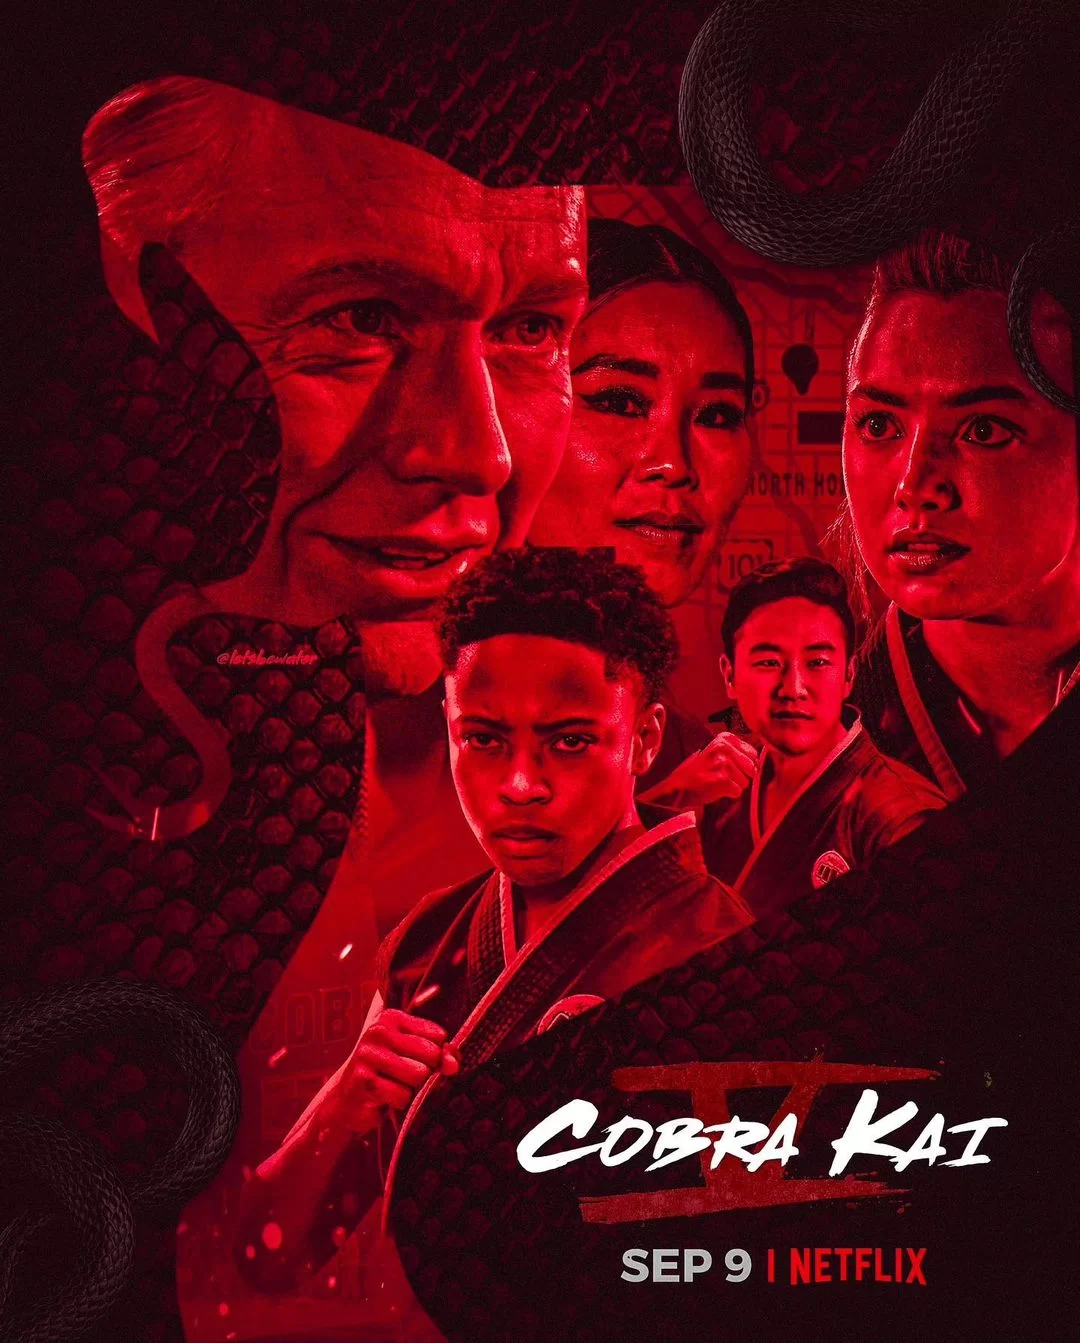 cobra kai season 5 concept posters 2